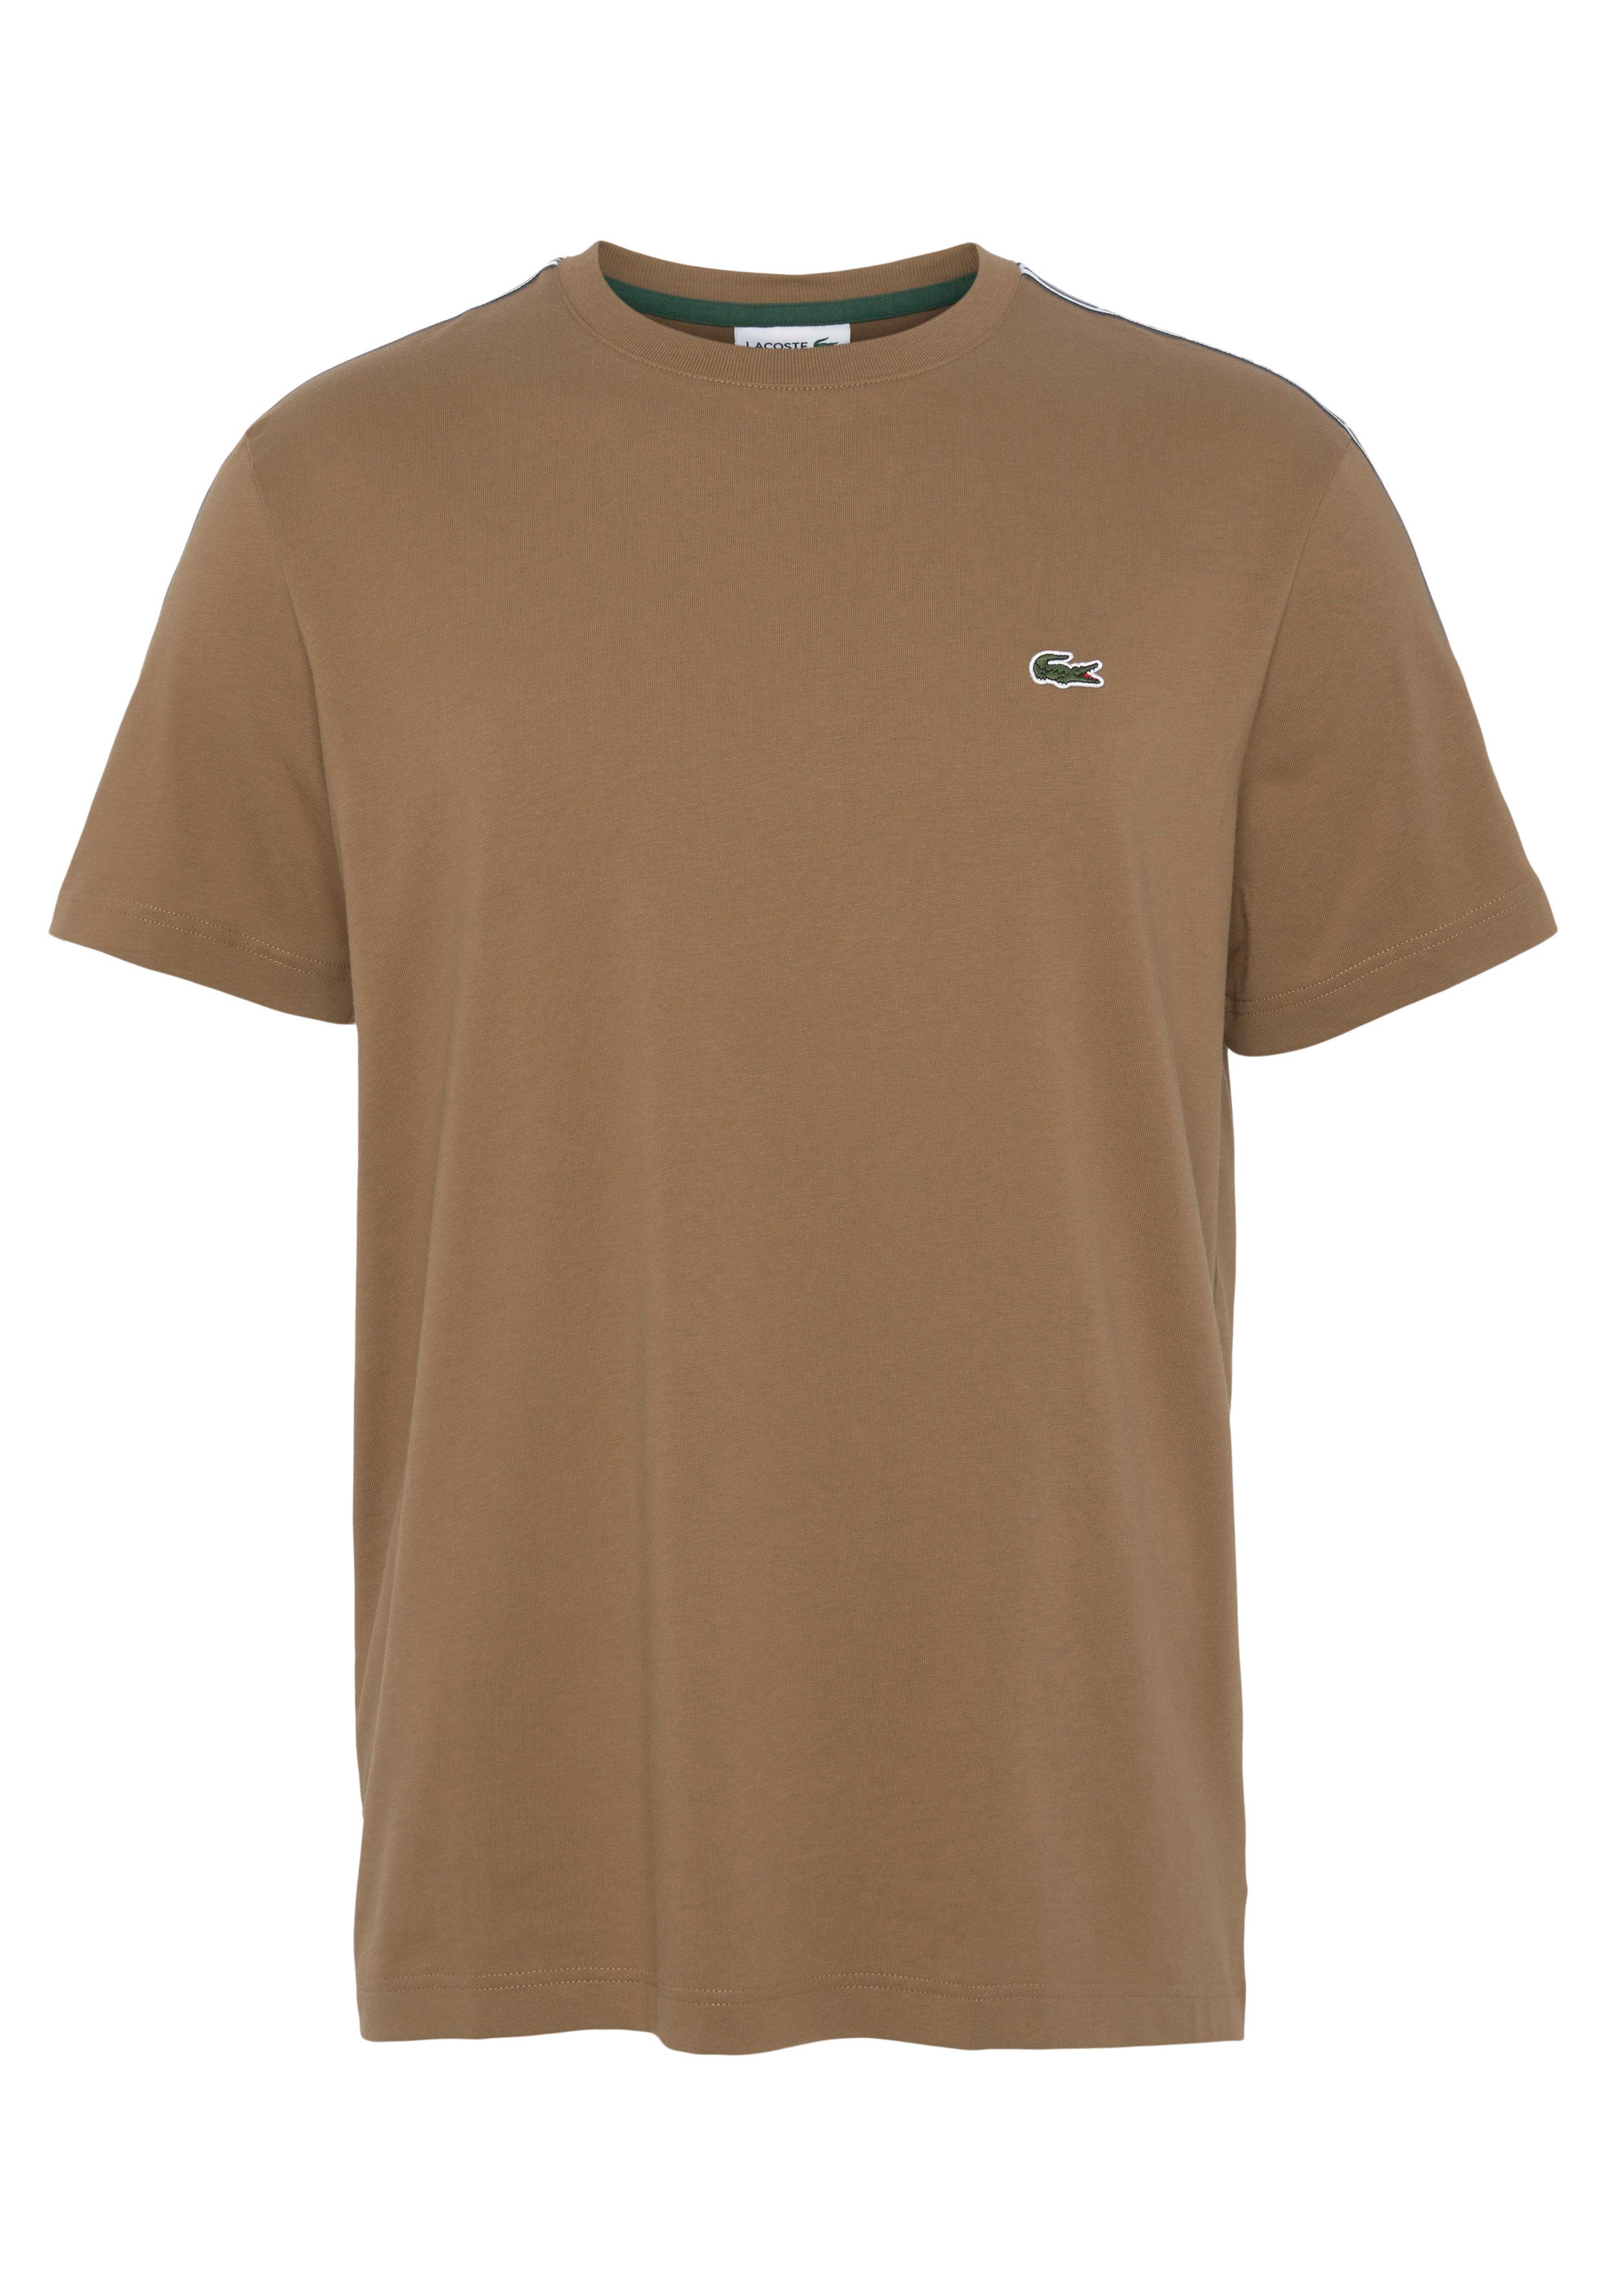 Lacoste T-Shirt mit beschriftetem Kontrastband an den Schultern braun